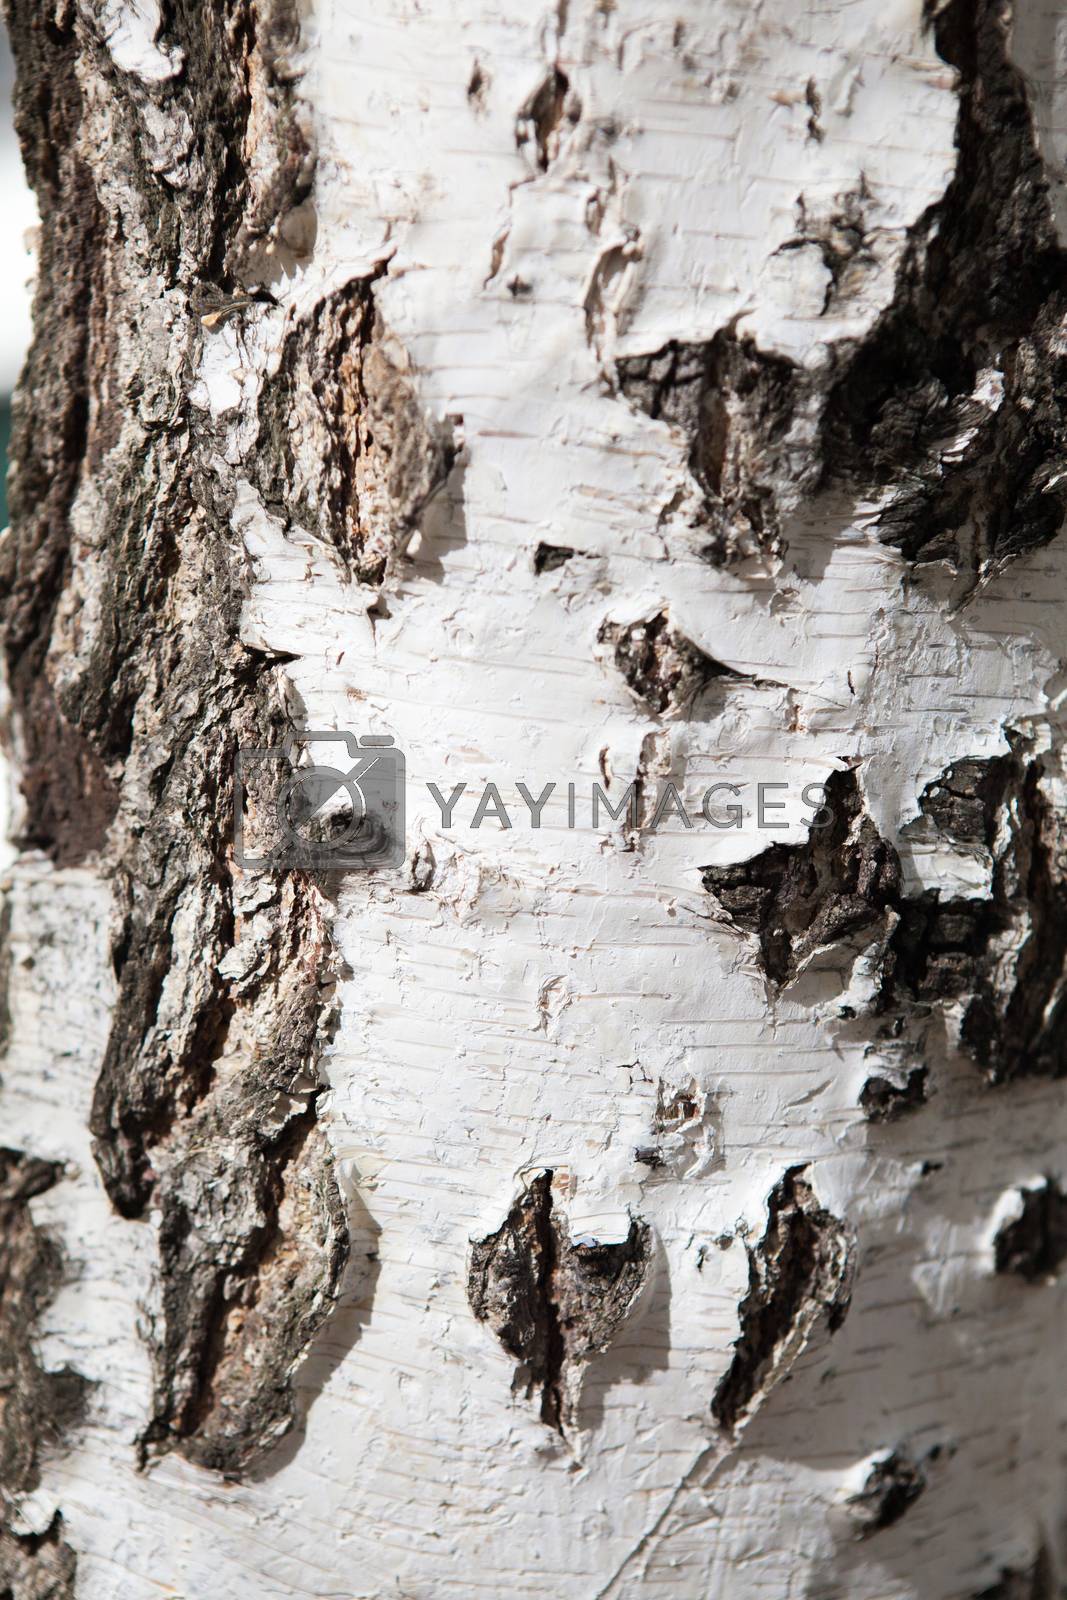 Royalty free image of birch bark by vsurkov